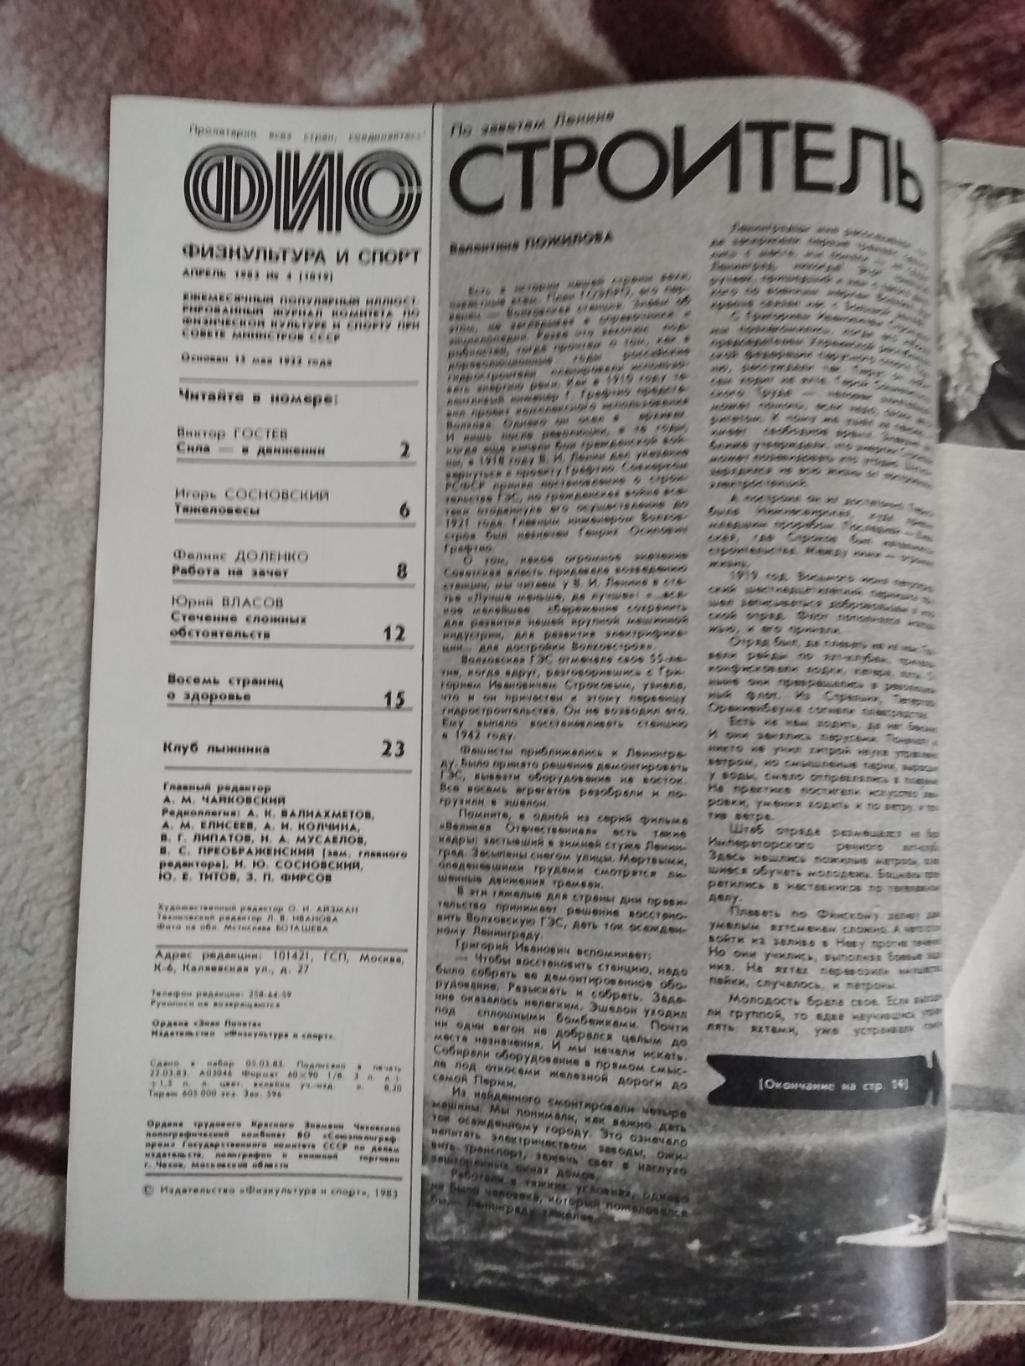 Журнал.Физкультура и спорт № 4 1983 г. (ФиС). 1